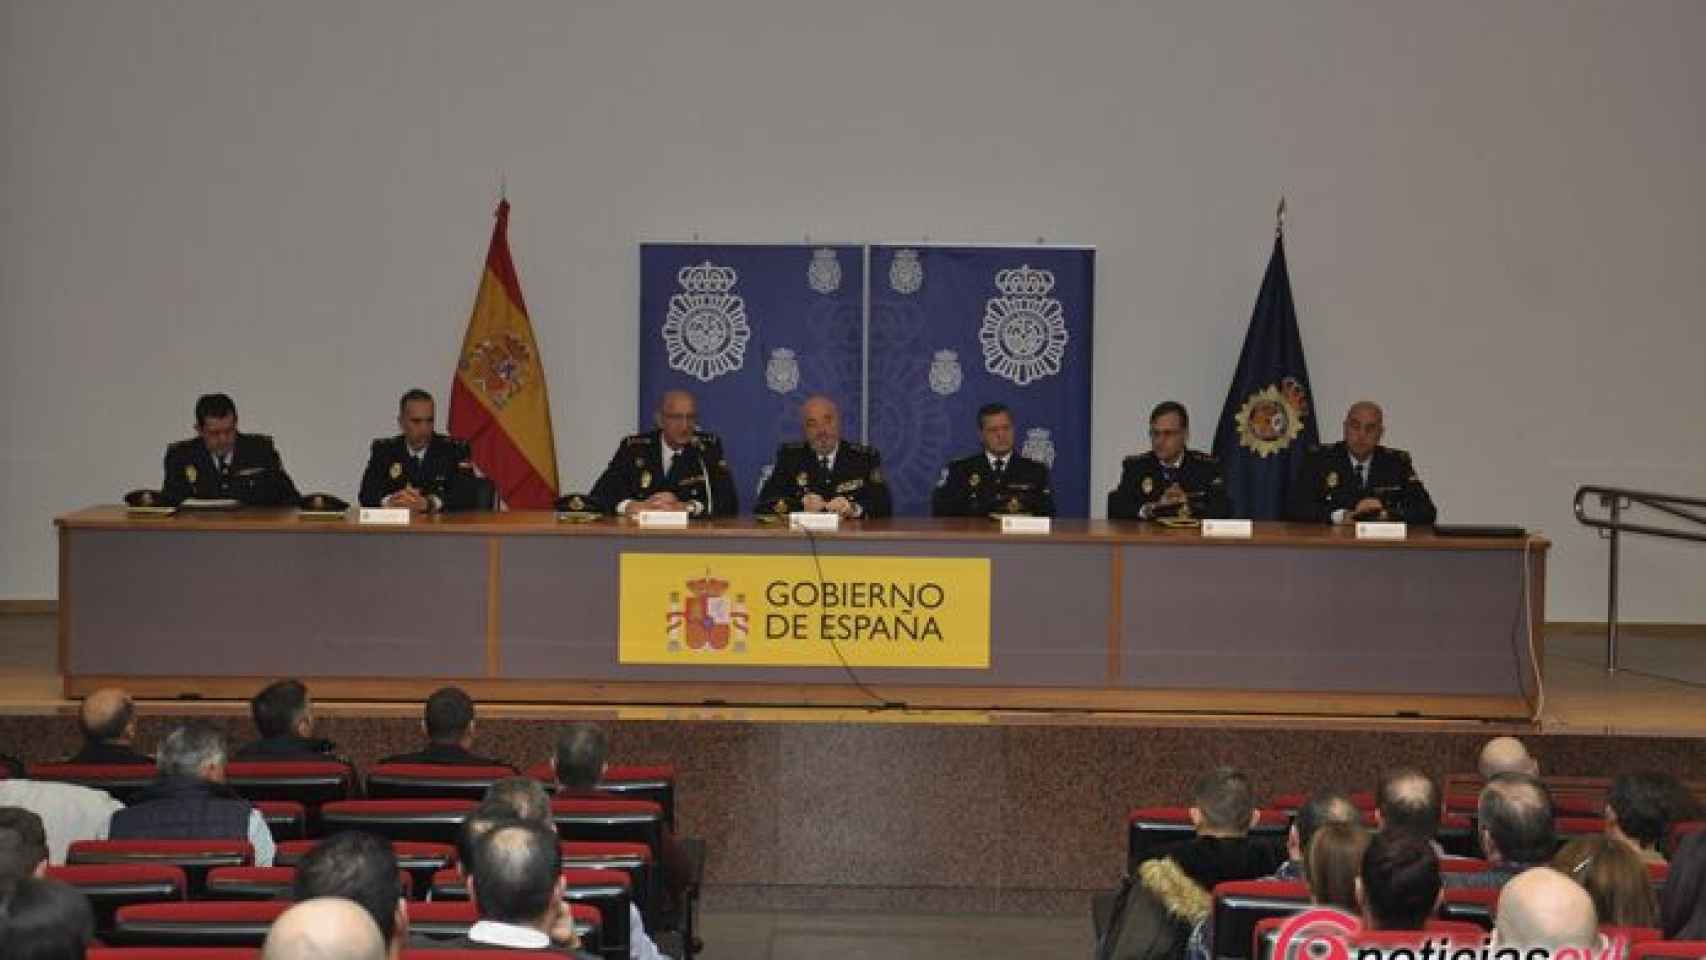 Valladolid-policia-nacional-sanidad-agresiones